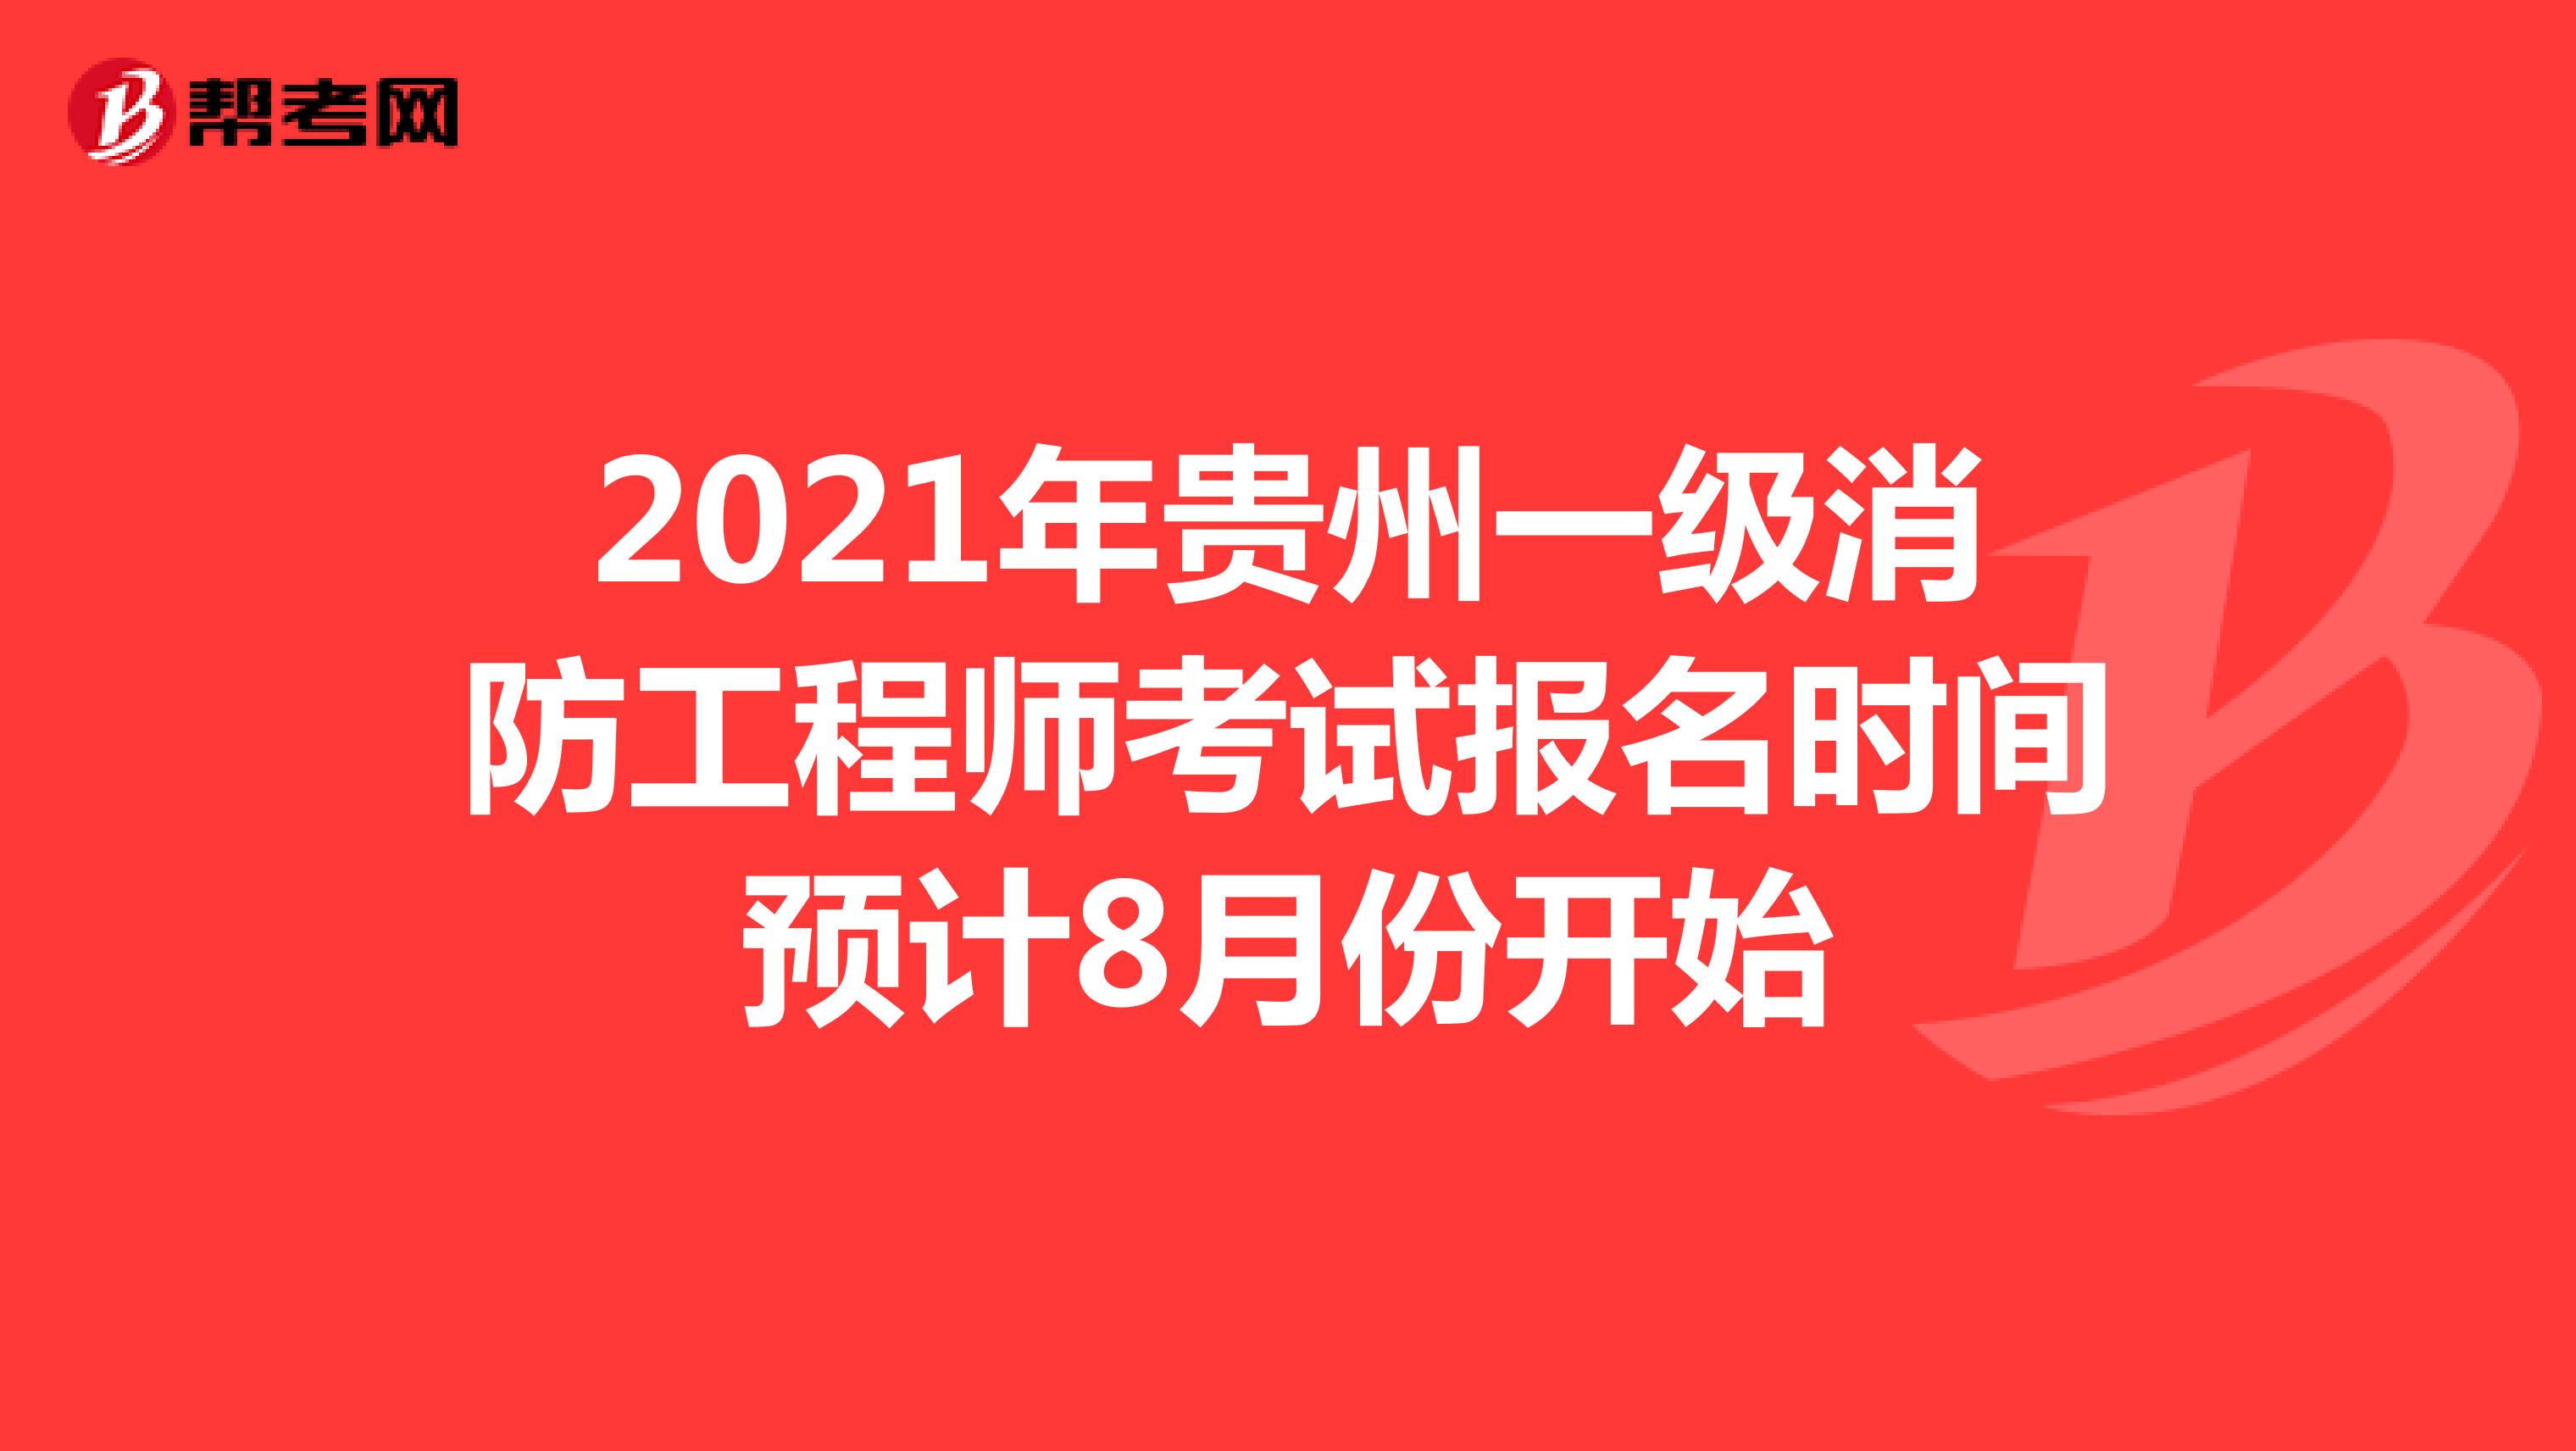 2021年贵州一级消防工程师考试报名时间预计8月份开始